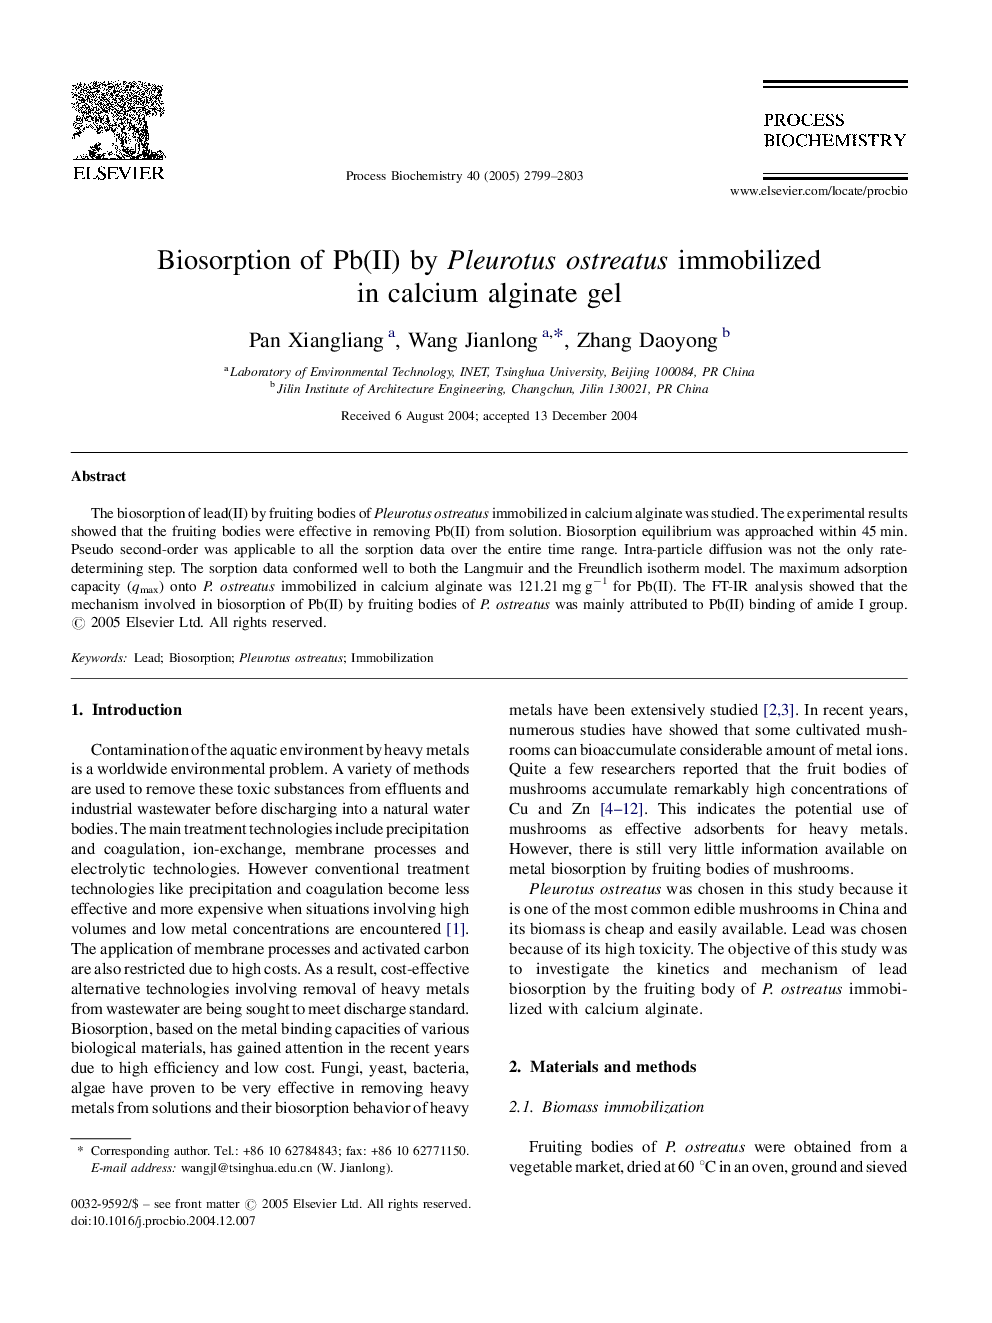 Biosorption of Pb(II) by Pleurotus ostreatus immobilized in calcium alginate gel